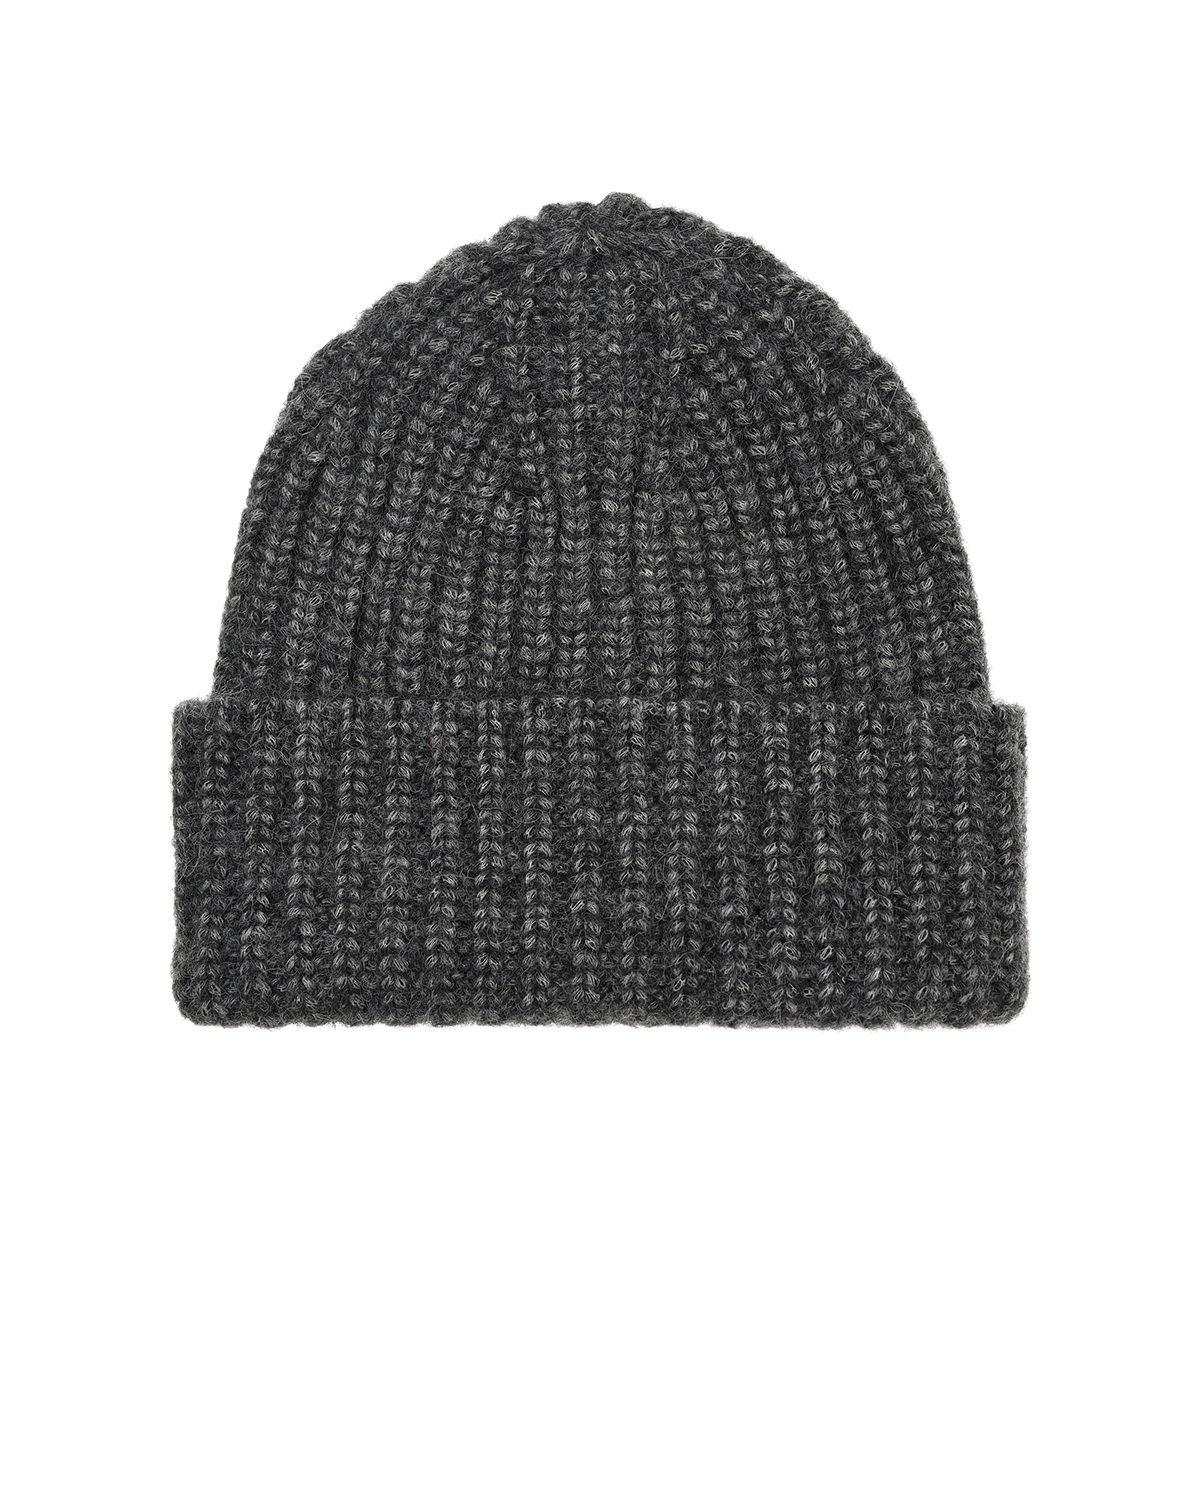 Серая шапка бини MRZ, размер unica, цвет серый